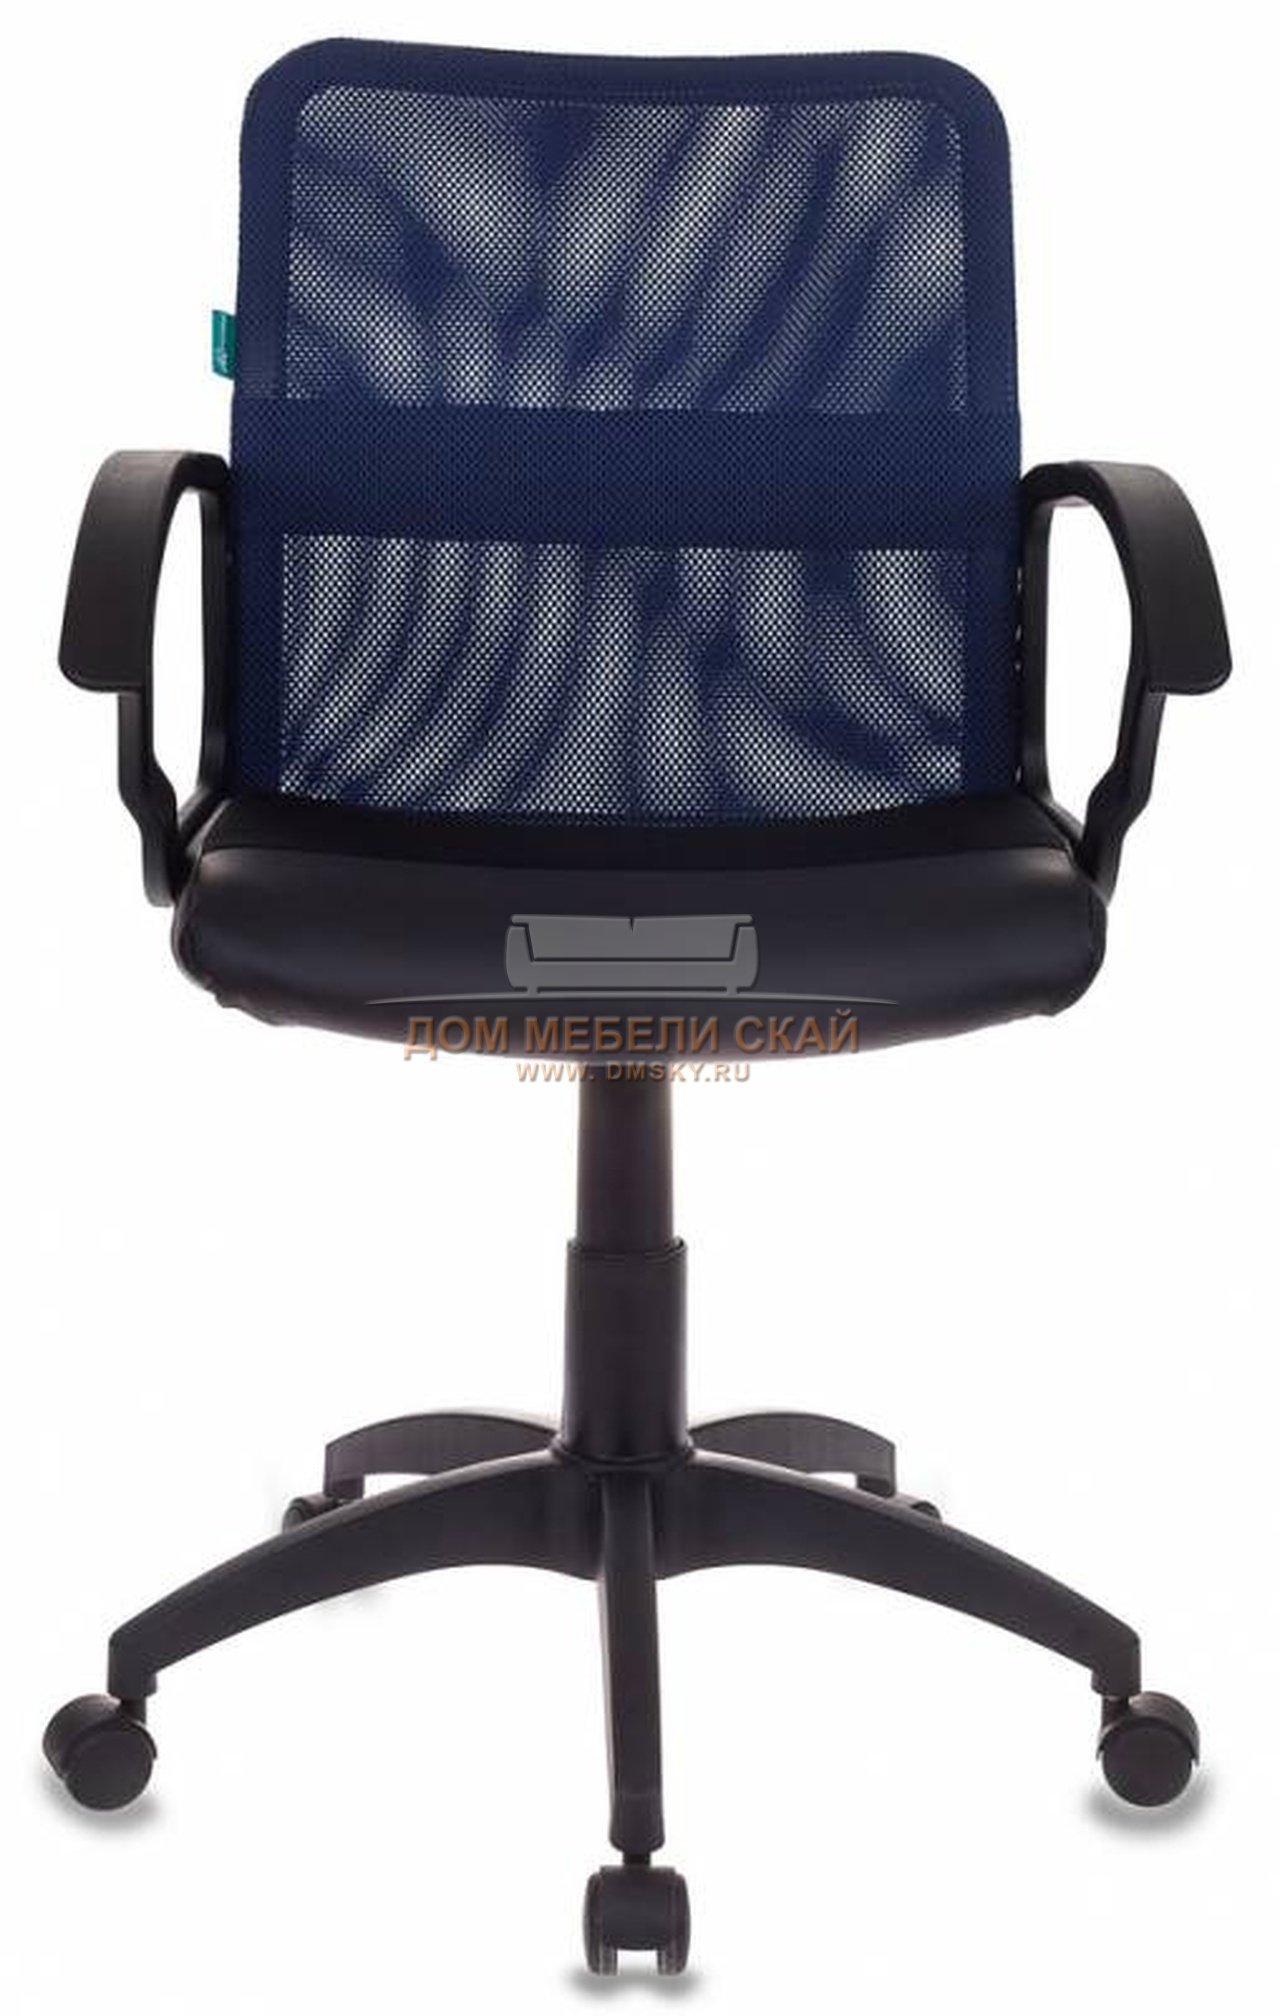 кресло офисное с сеткой на спинке и на сидение